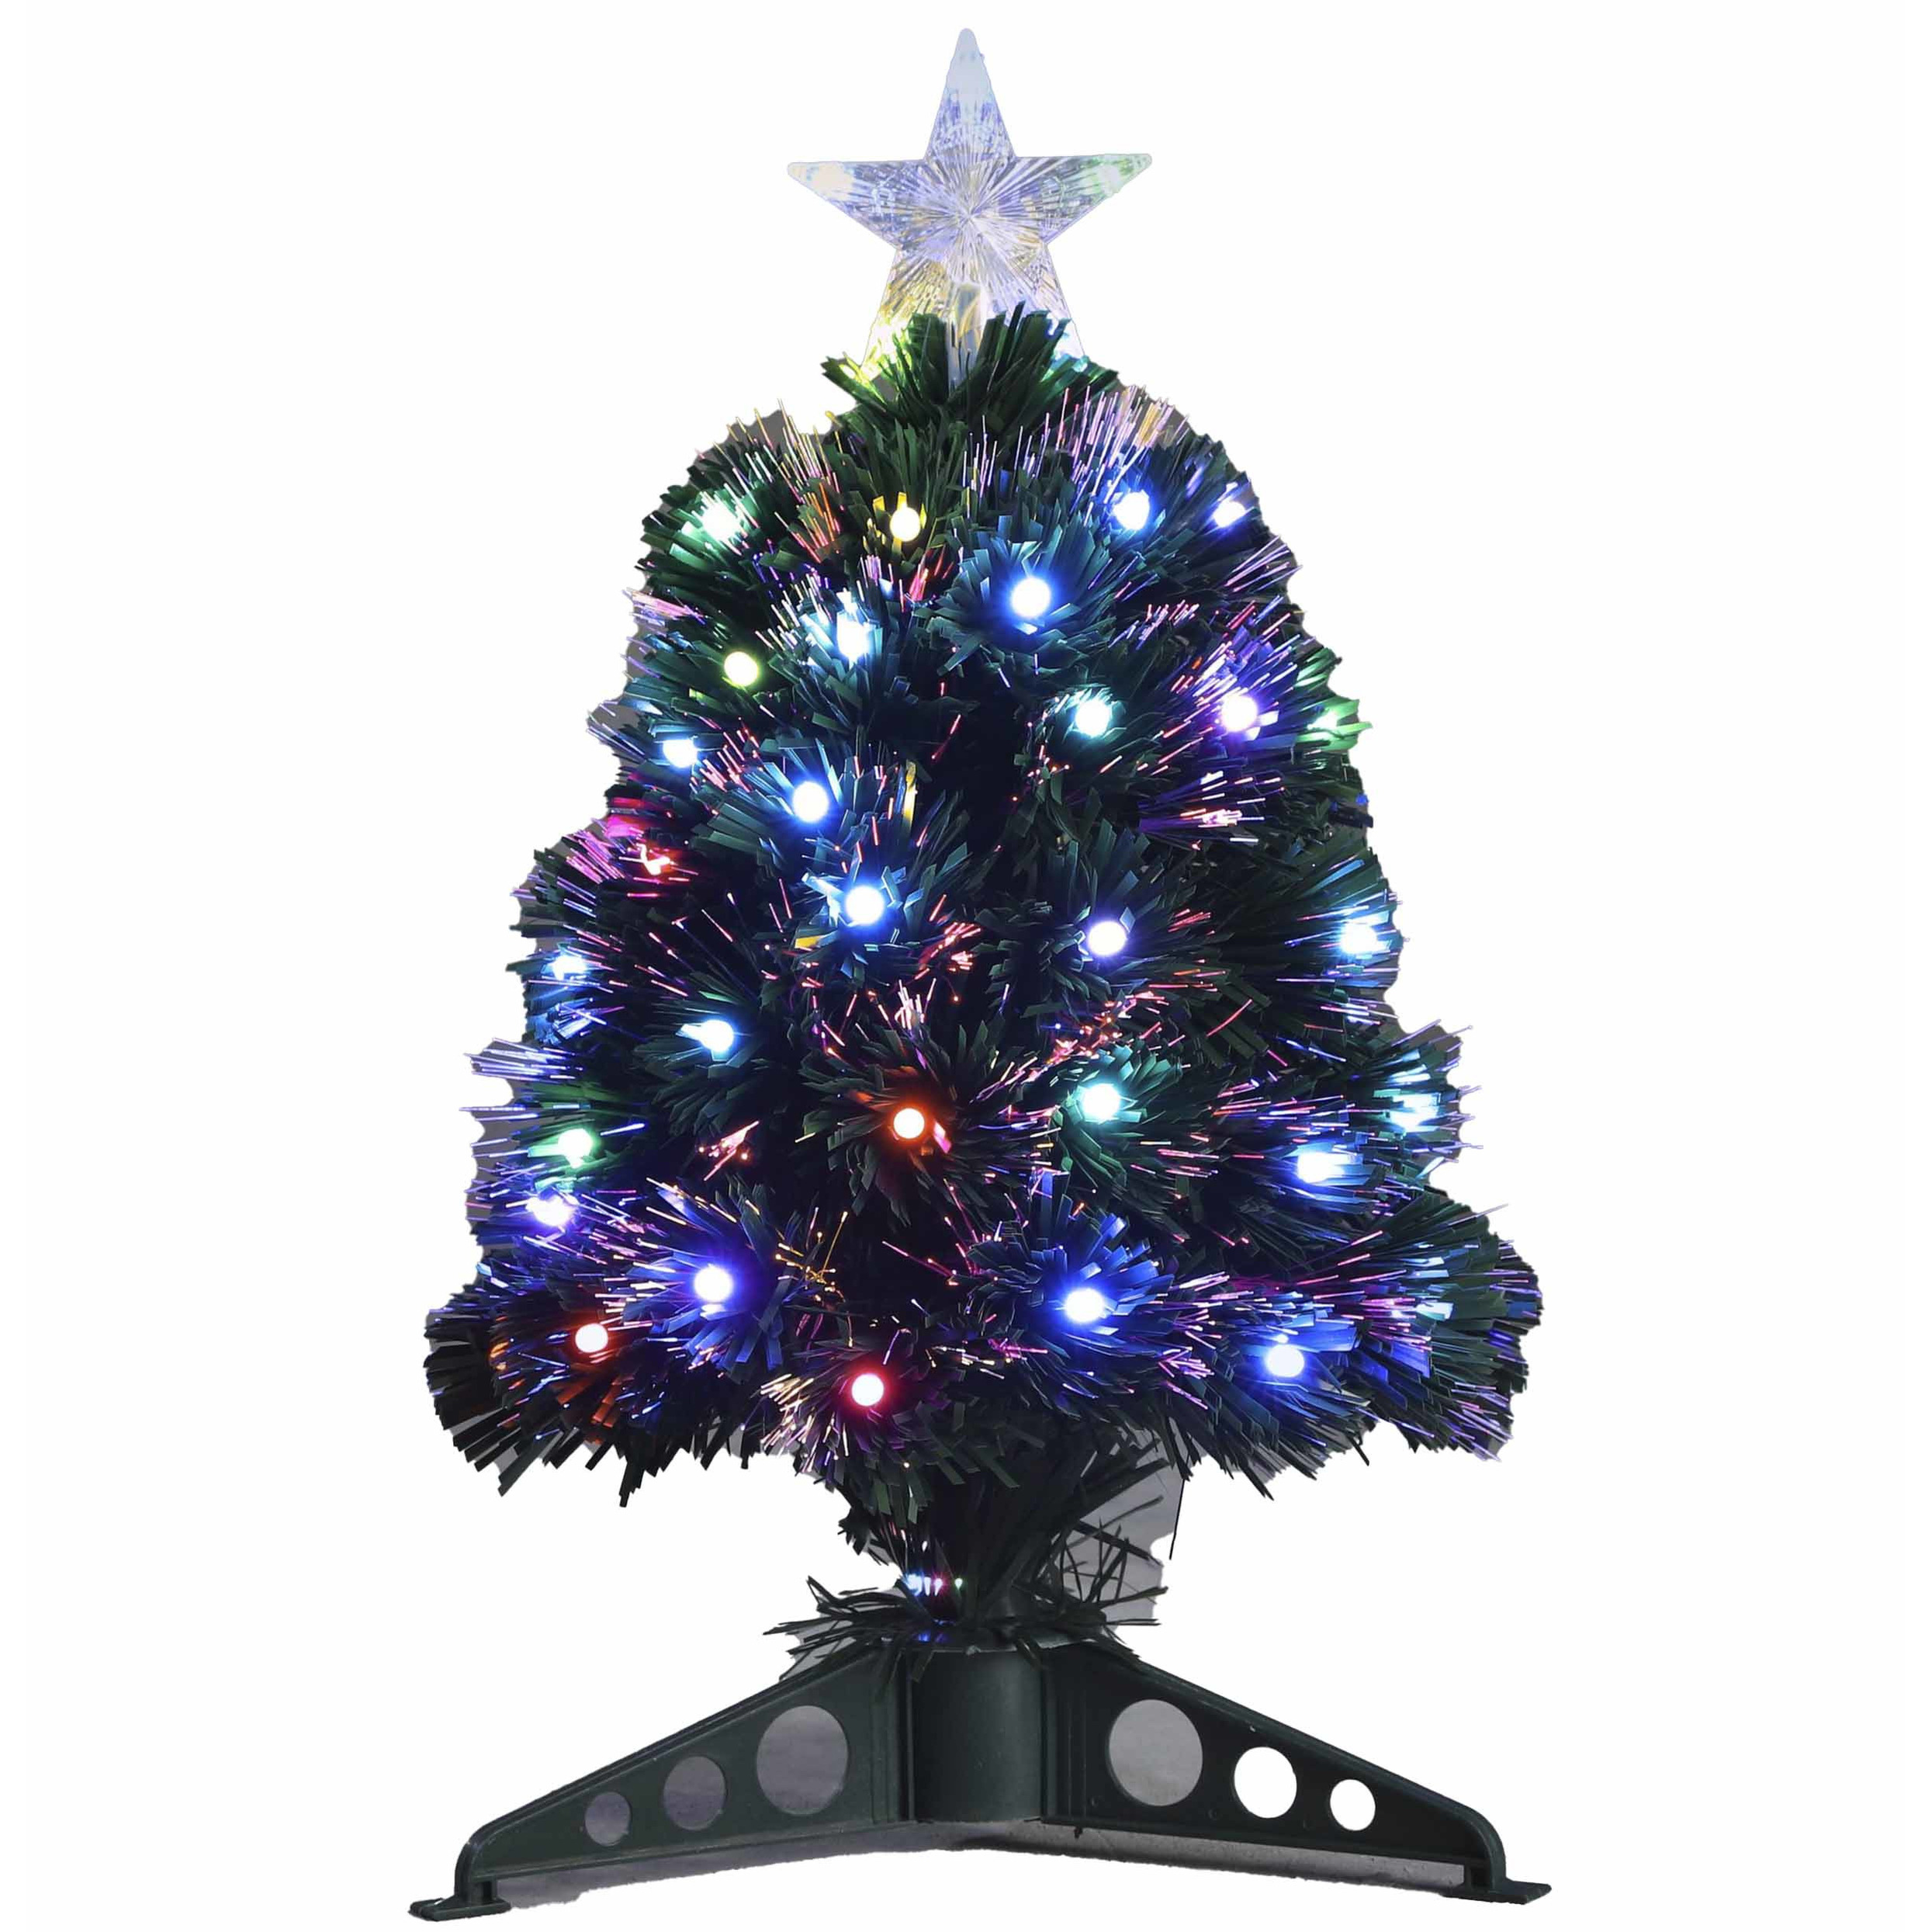 Fiber optic kerstboom-kunst kerstboom met gekleurde lampjes 45 cm